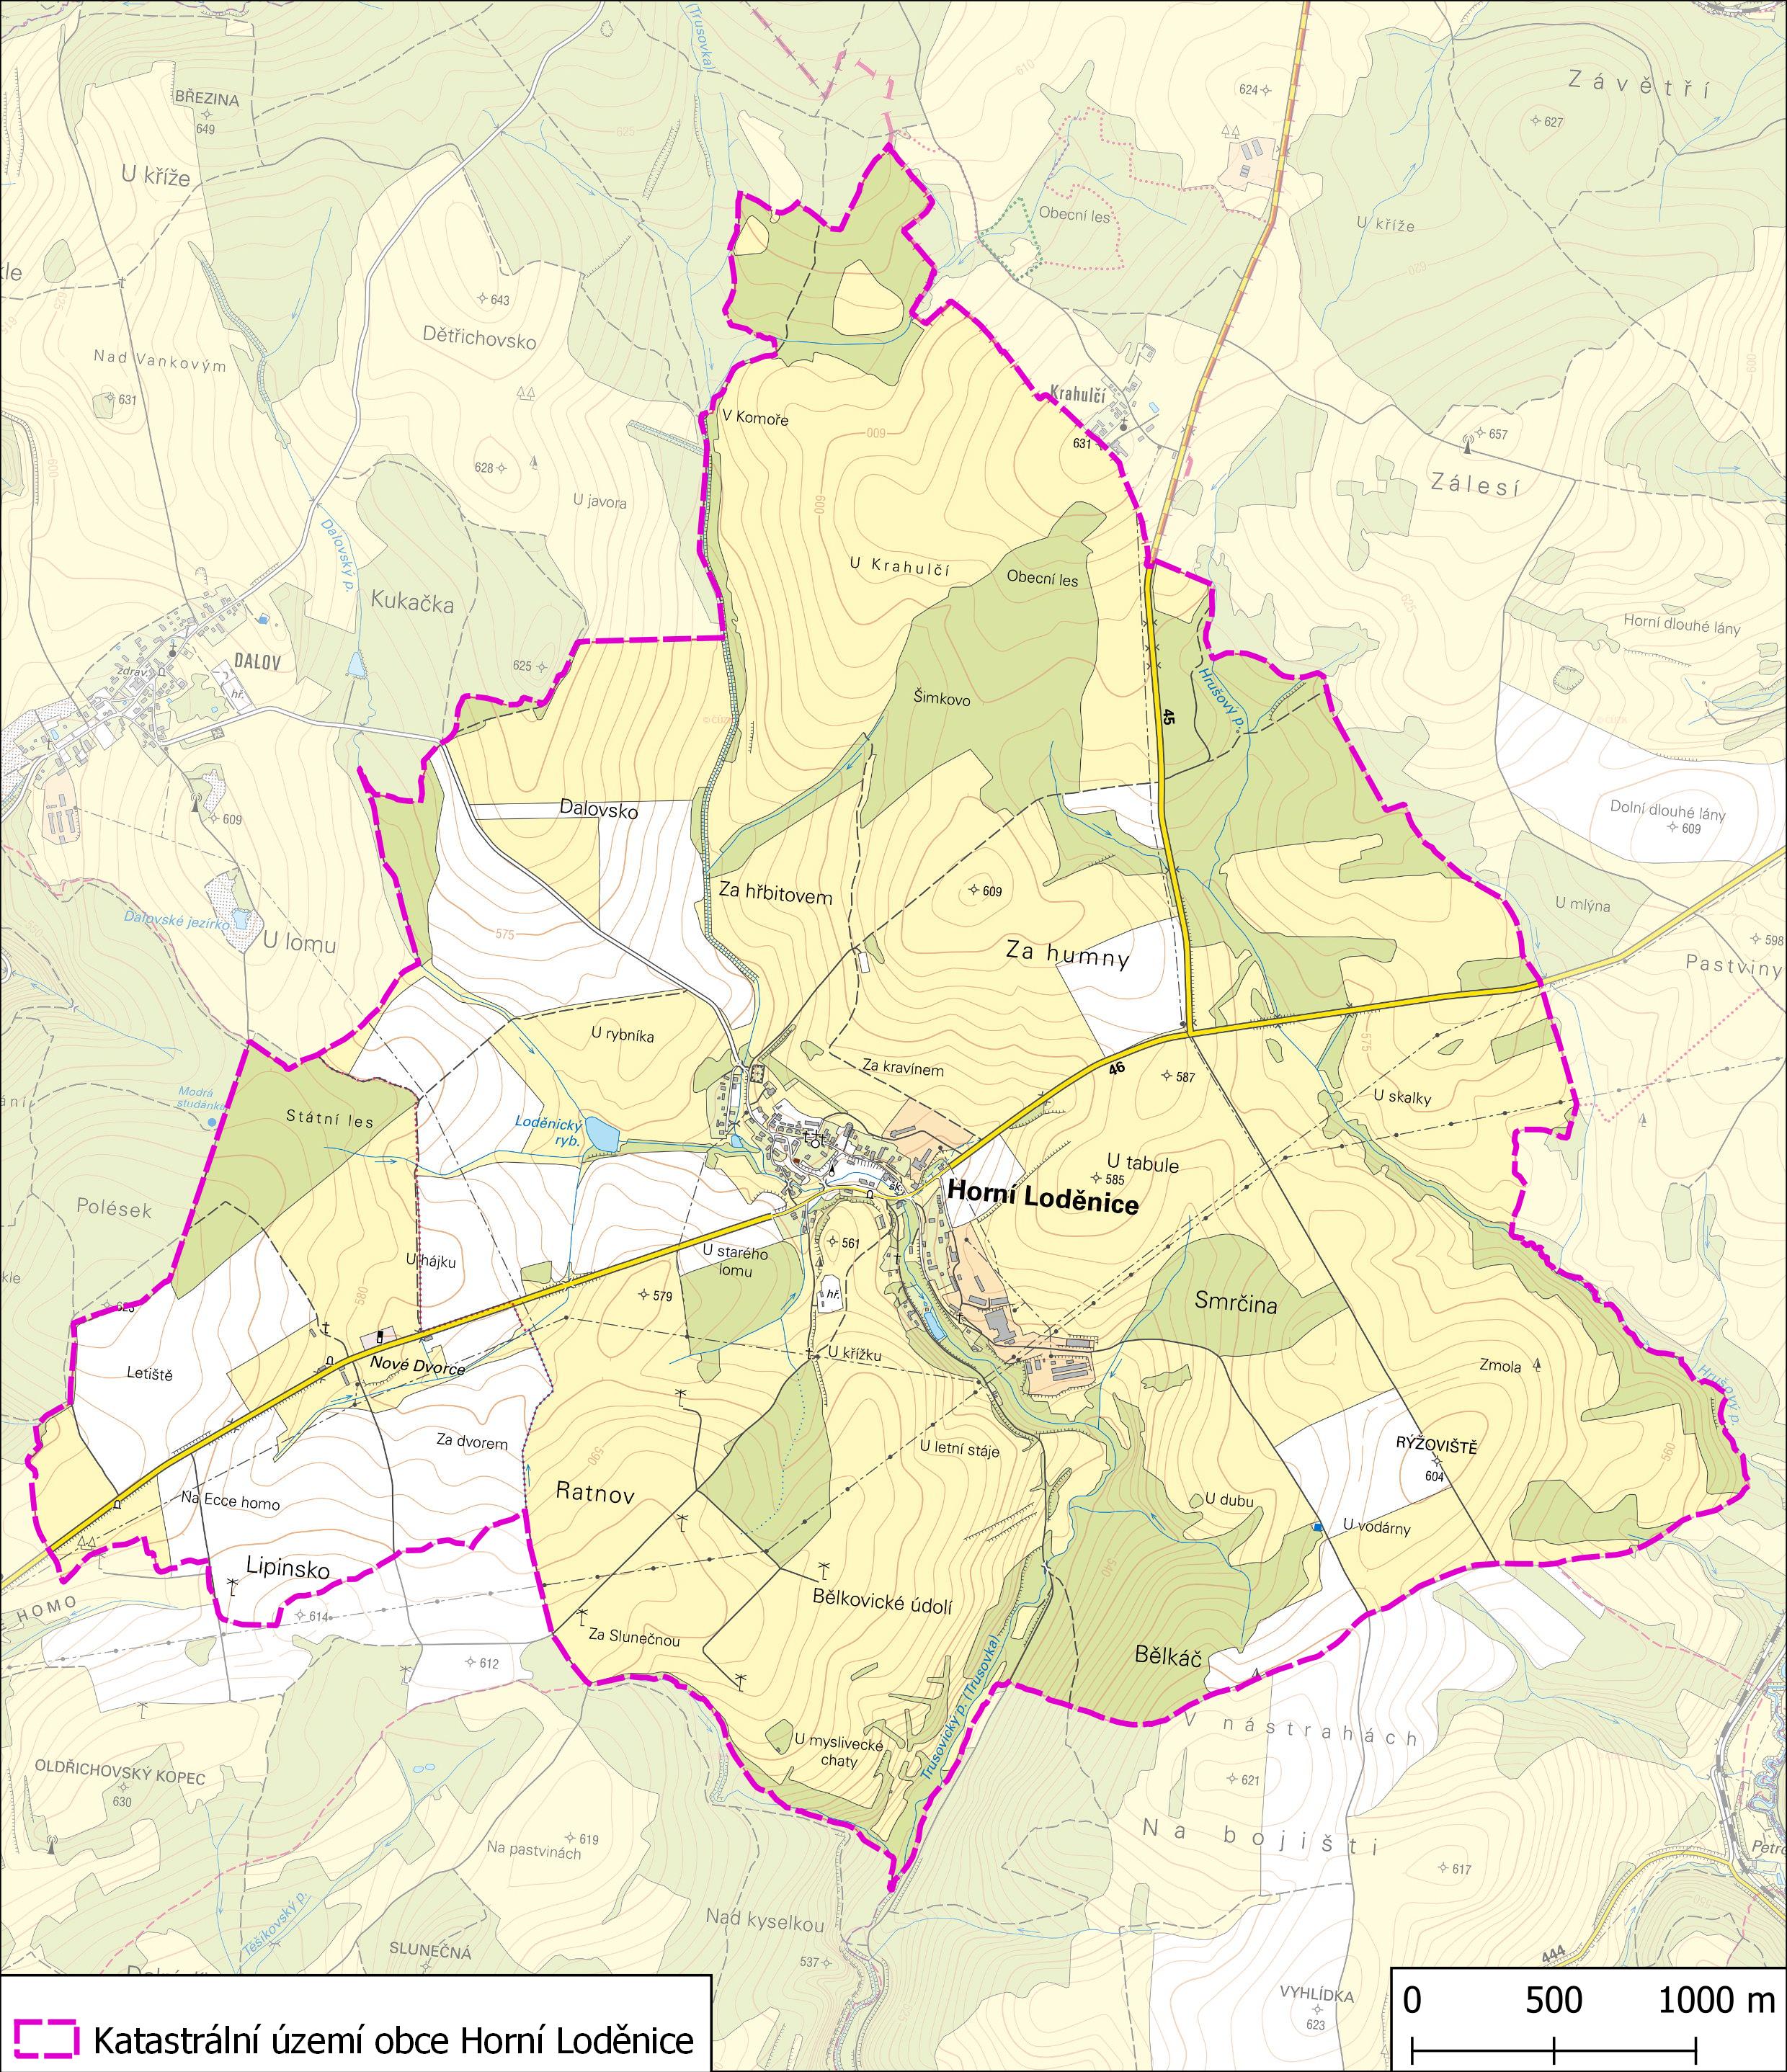 Katastrální území obce Horní Loděnice